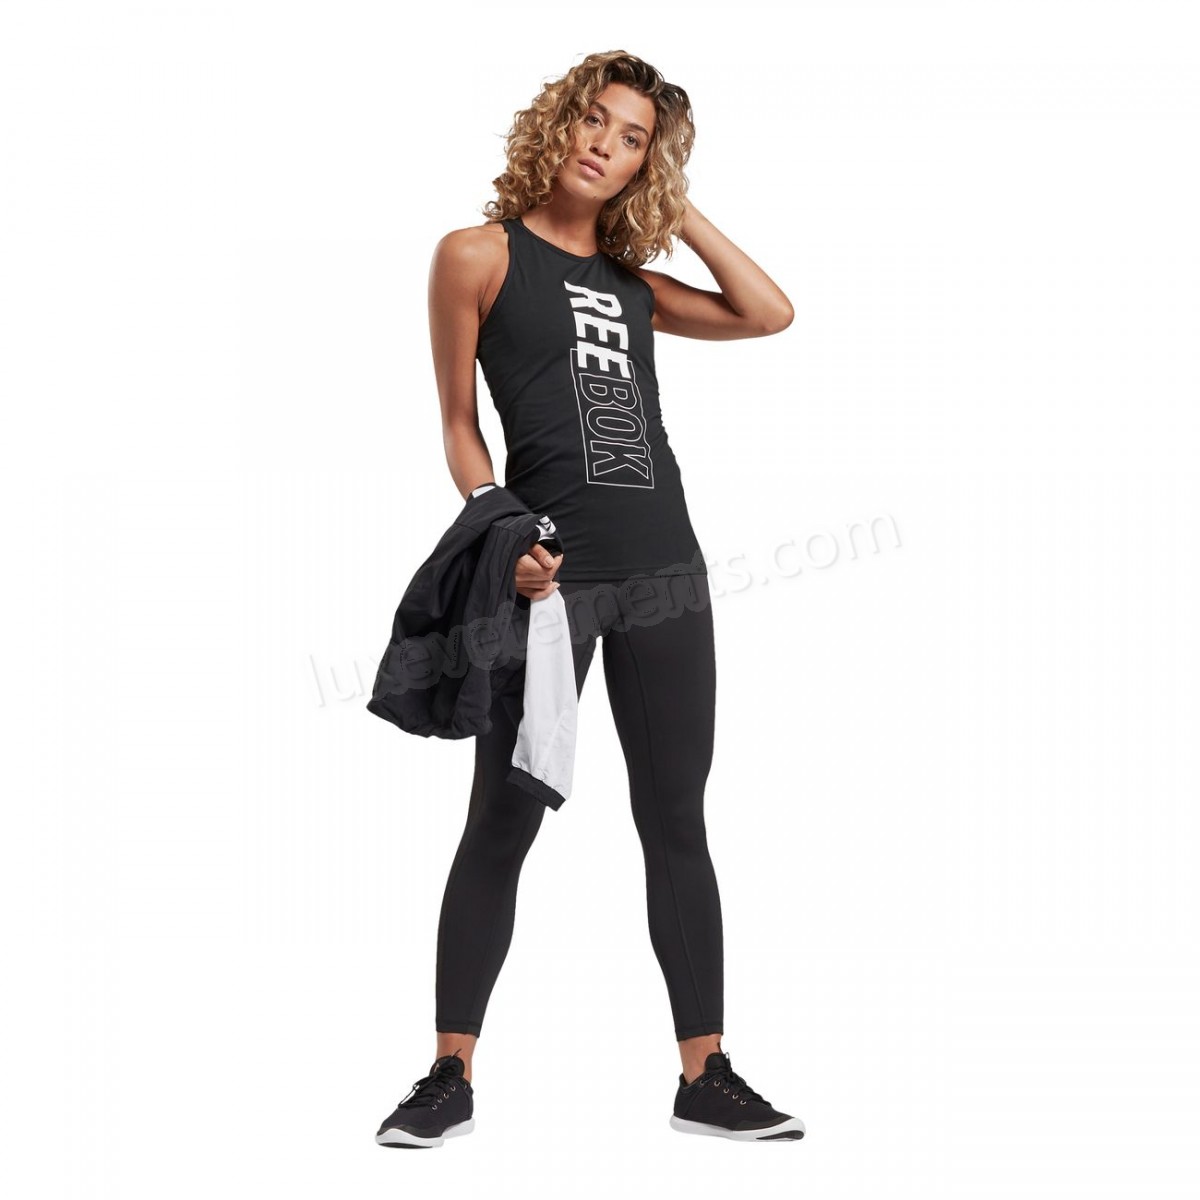 Reebok-Fitness femme REEBOK Débardeur femme Reebok Studio High Intensity Vente en ligne - -25